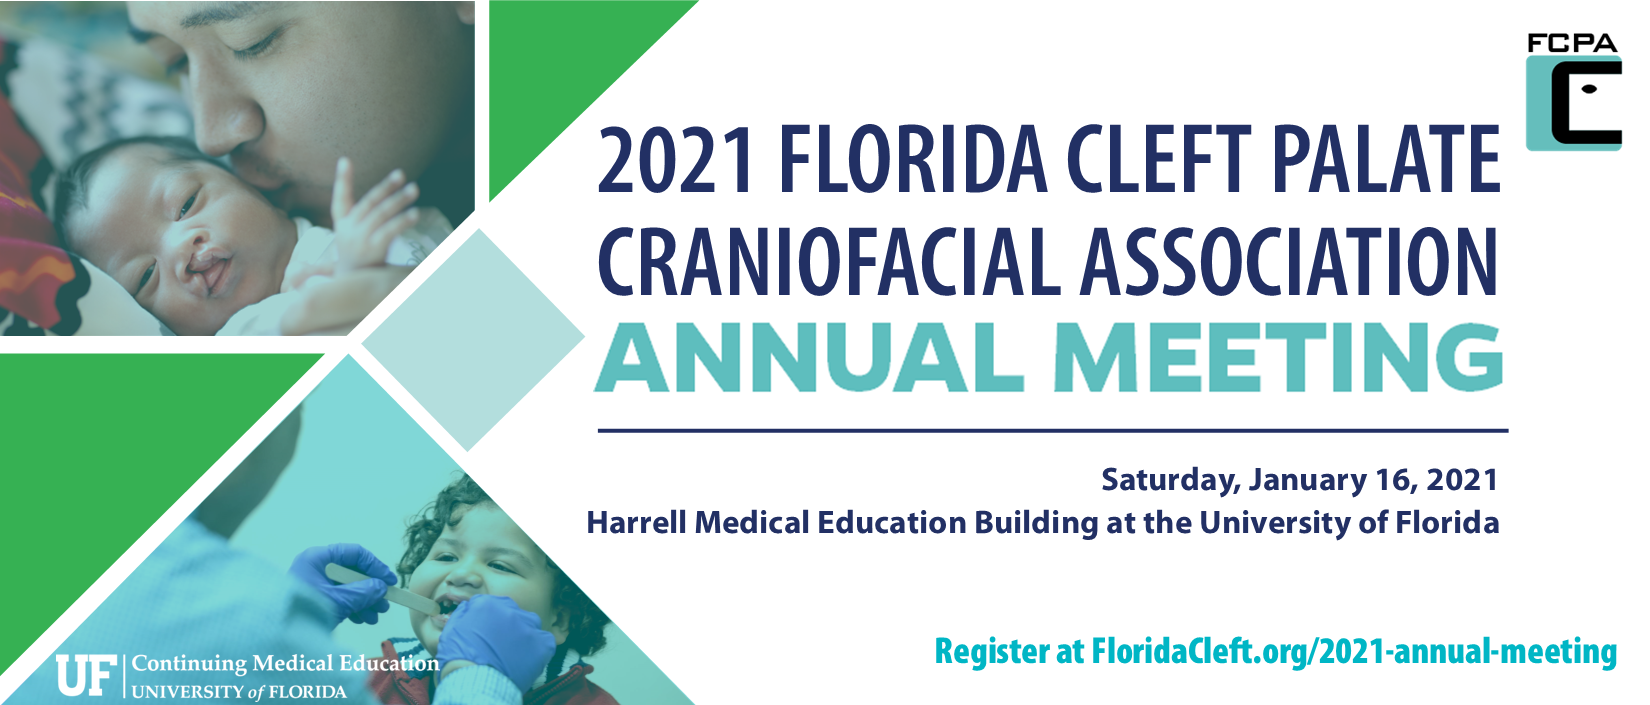 2021 Annual Meeting Florida Cleft Palate Craniofacial Association